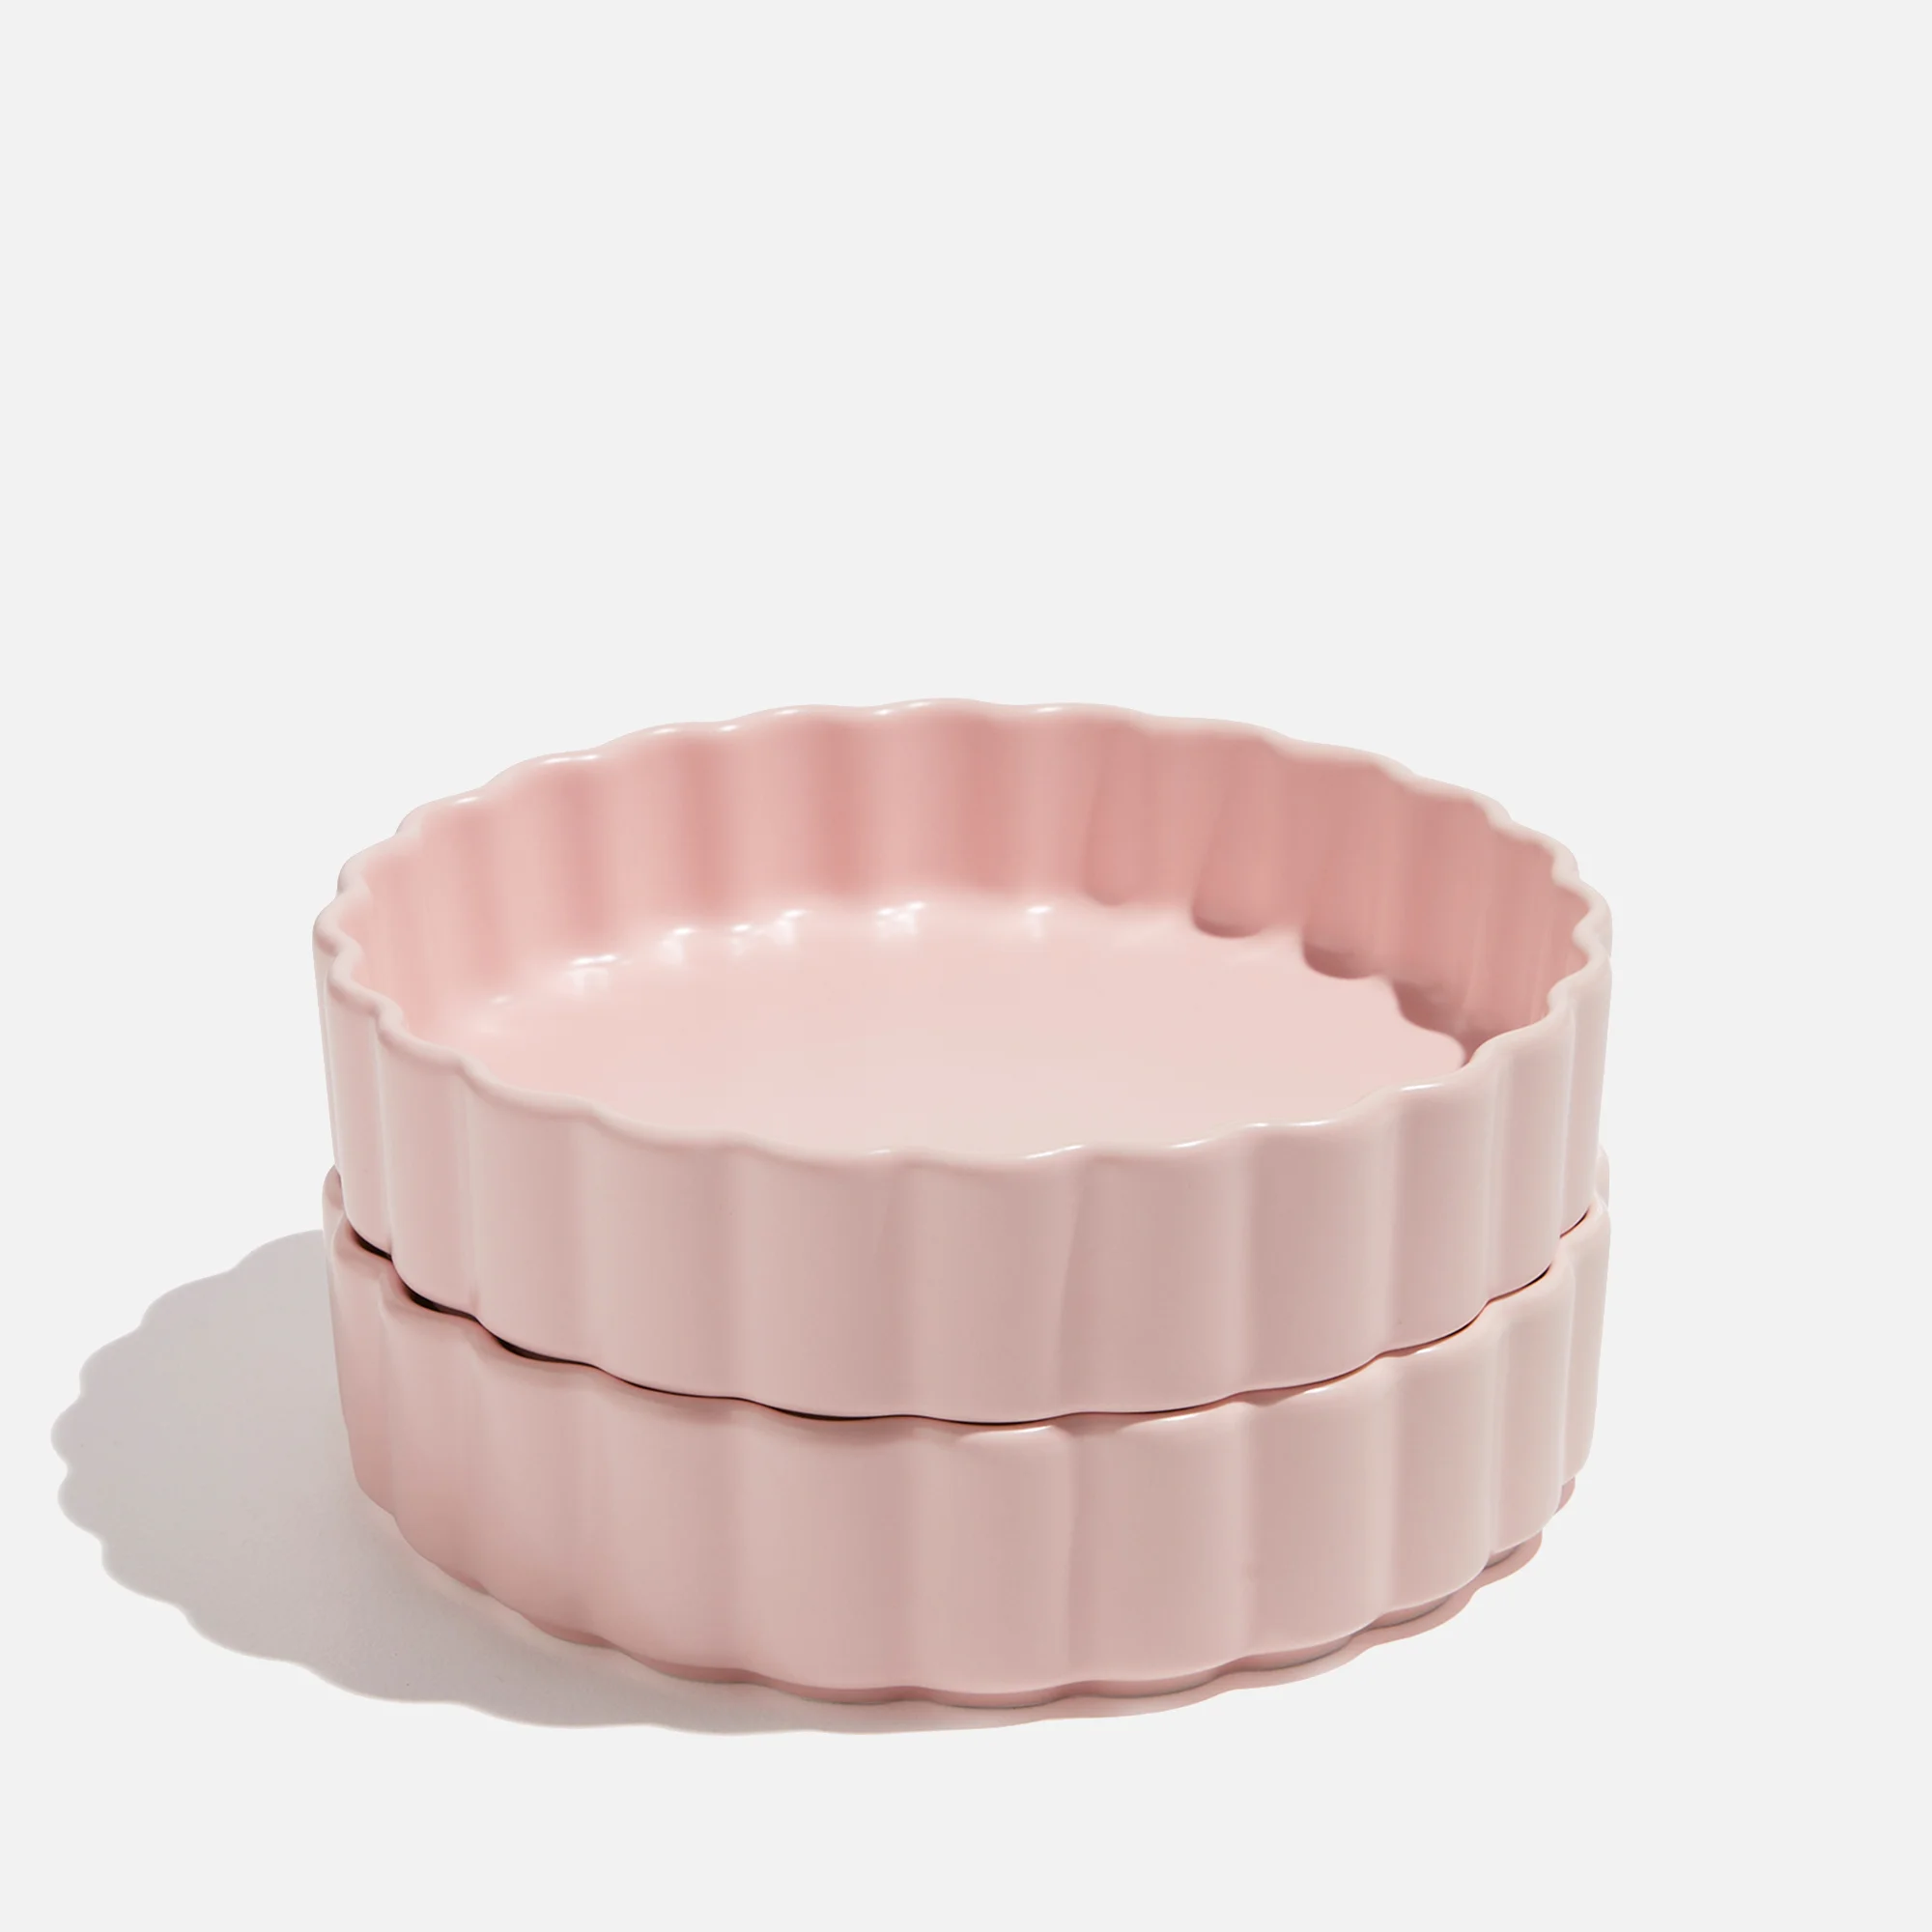 Fazeek Ceramic Bowl - Set of 2 Pink Image 1